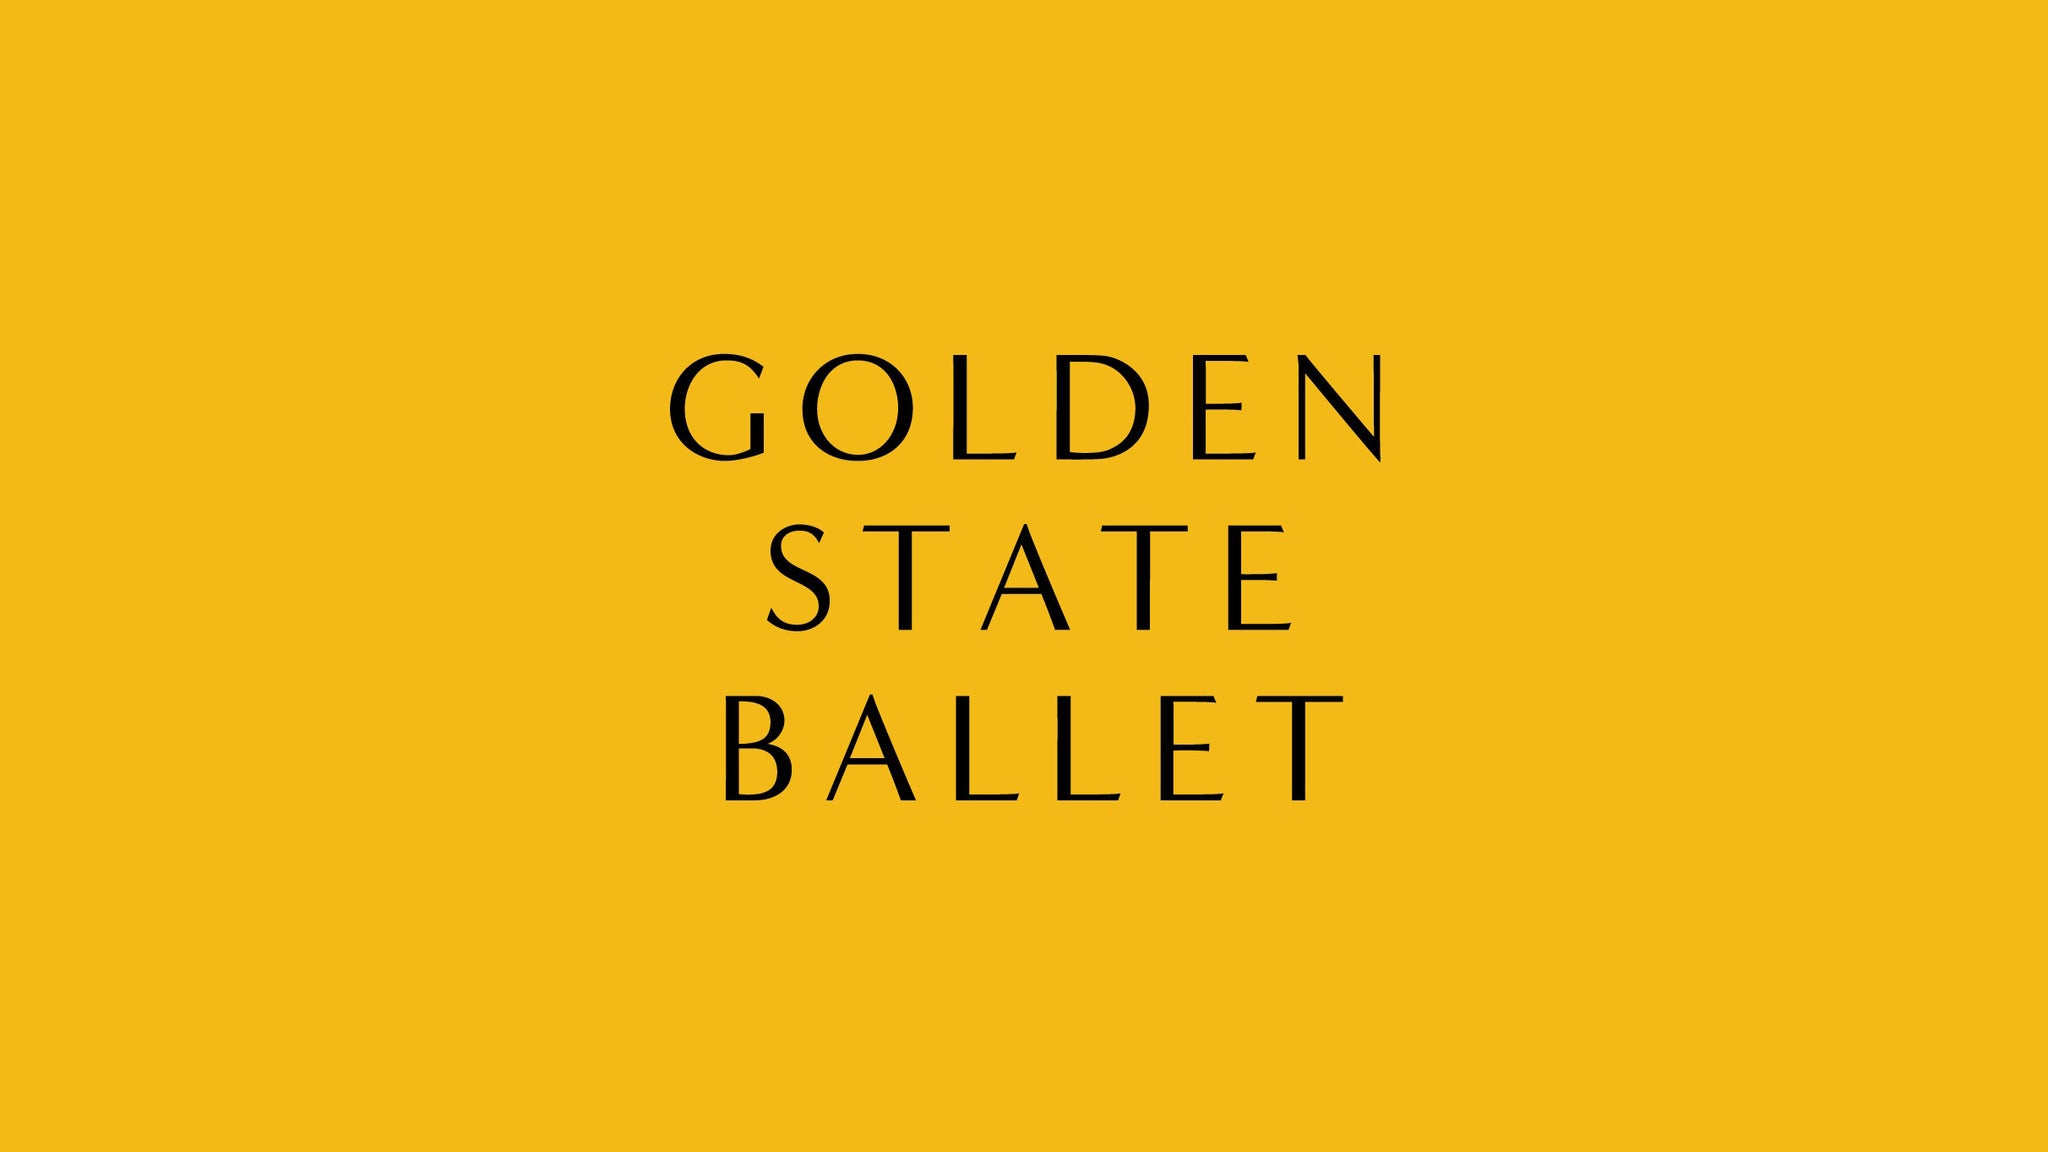 Golden State Ballet Presents The Nutcracker - San Diego, CA 92101